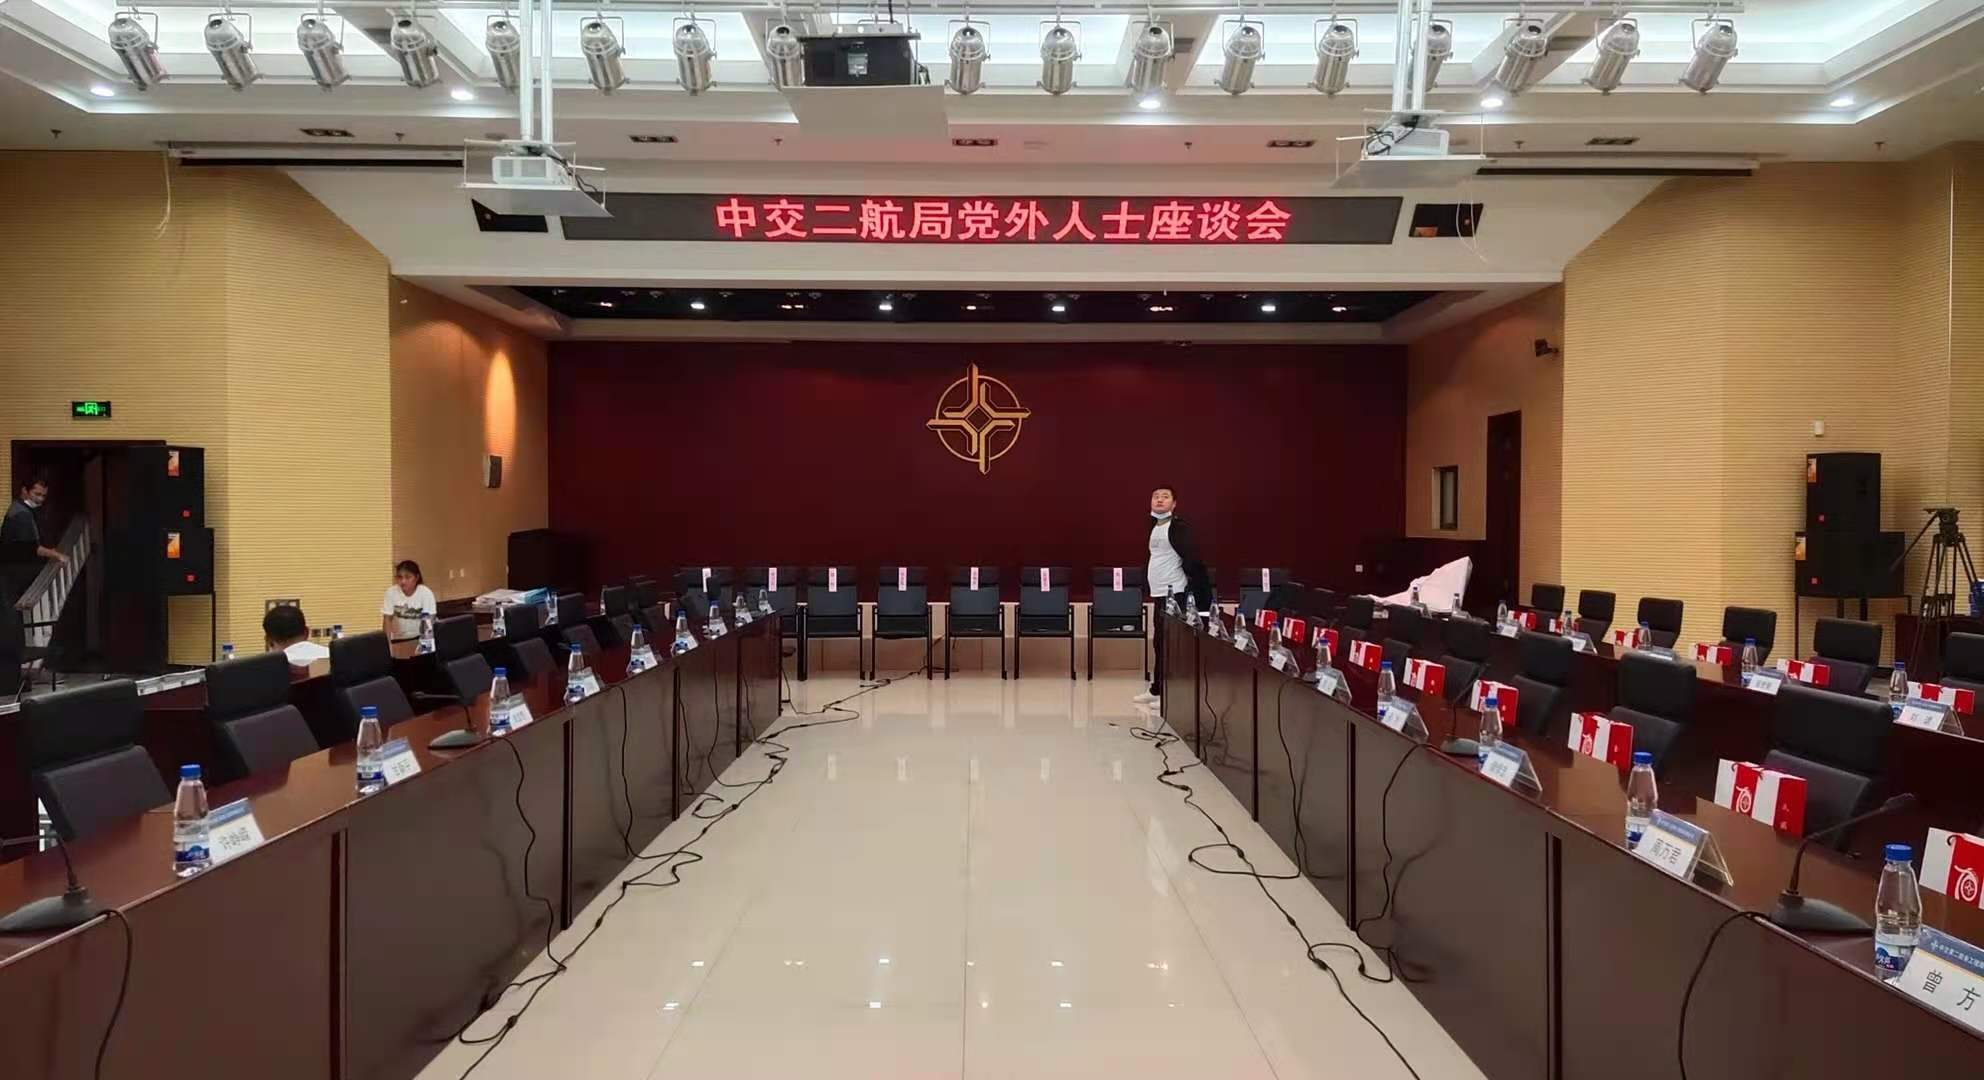 湖北省武汉市中交二航局多个会议室